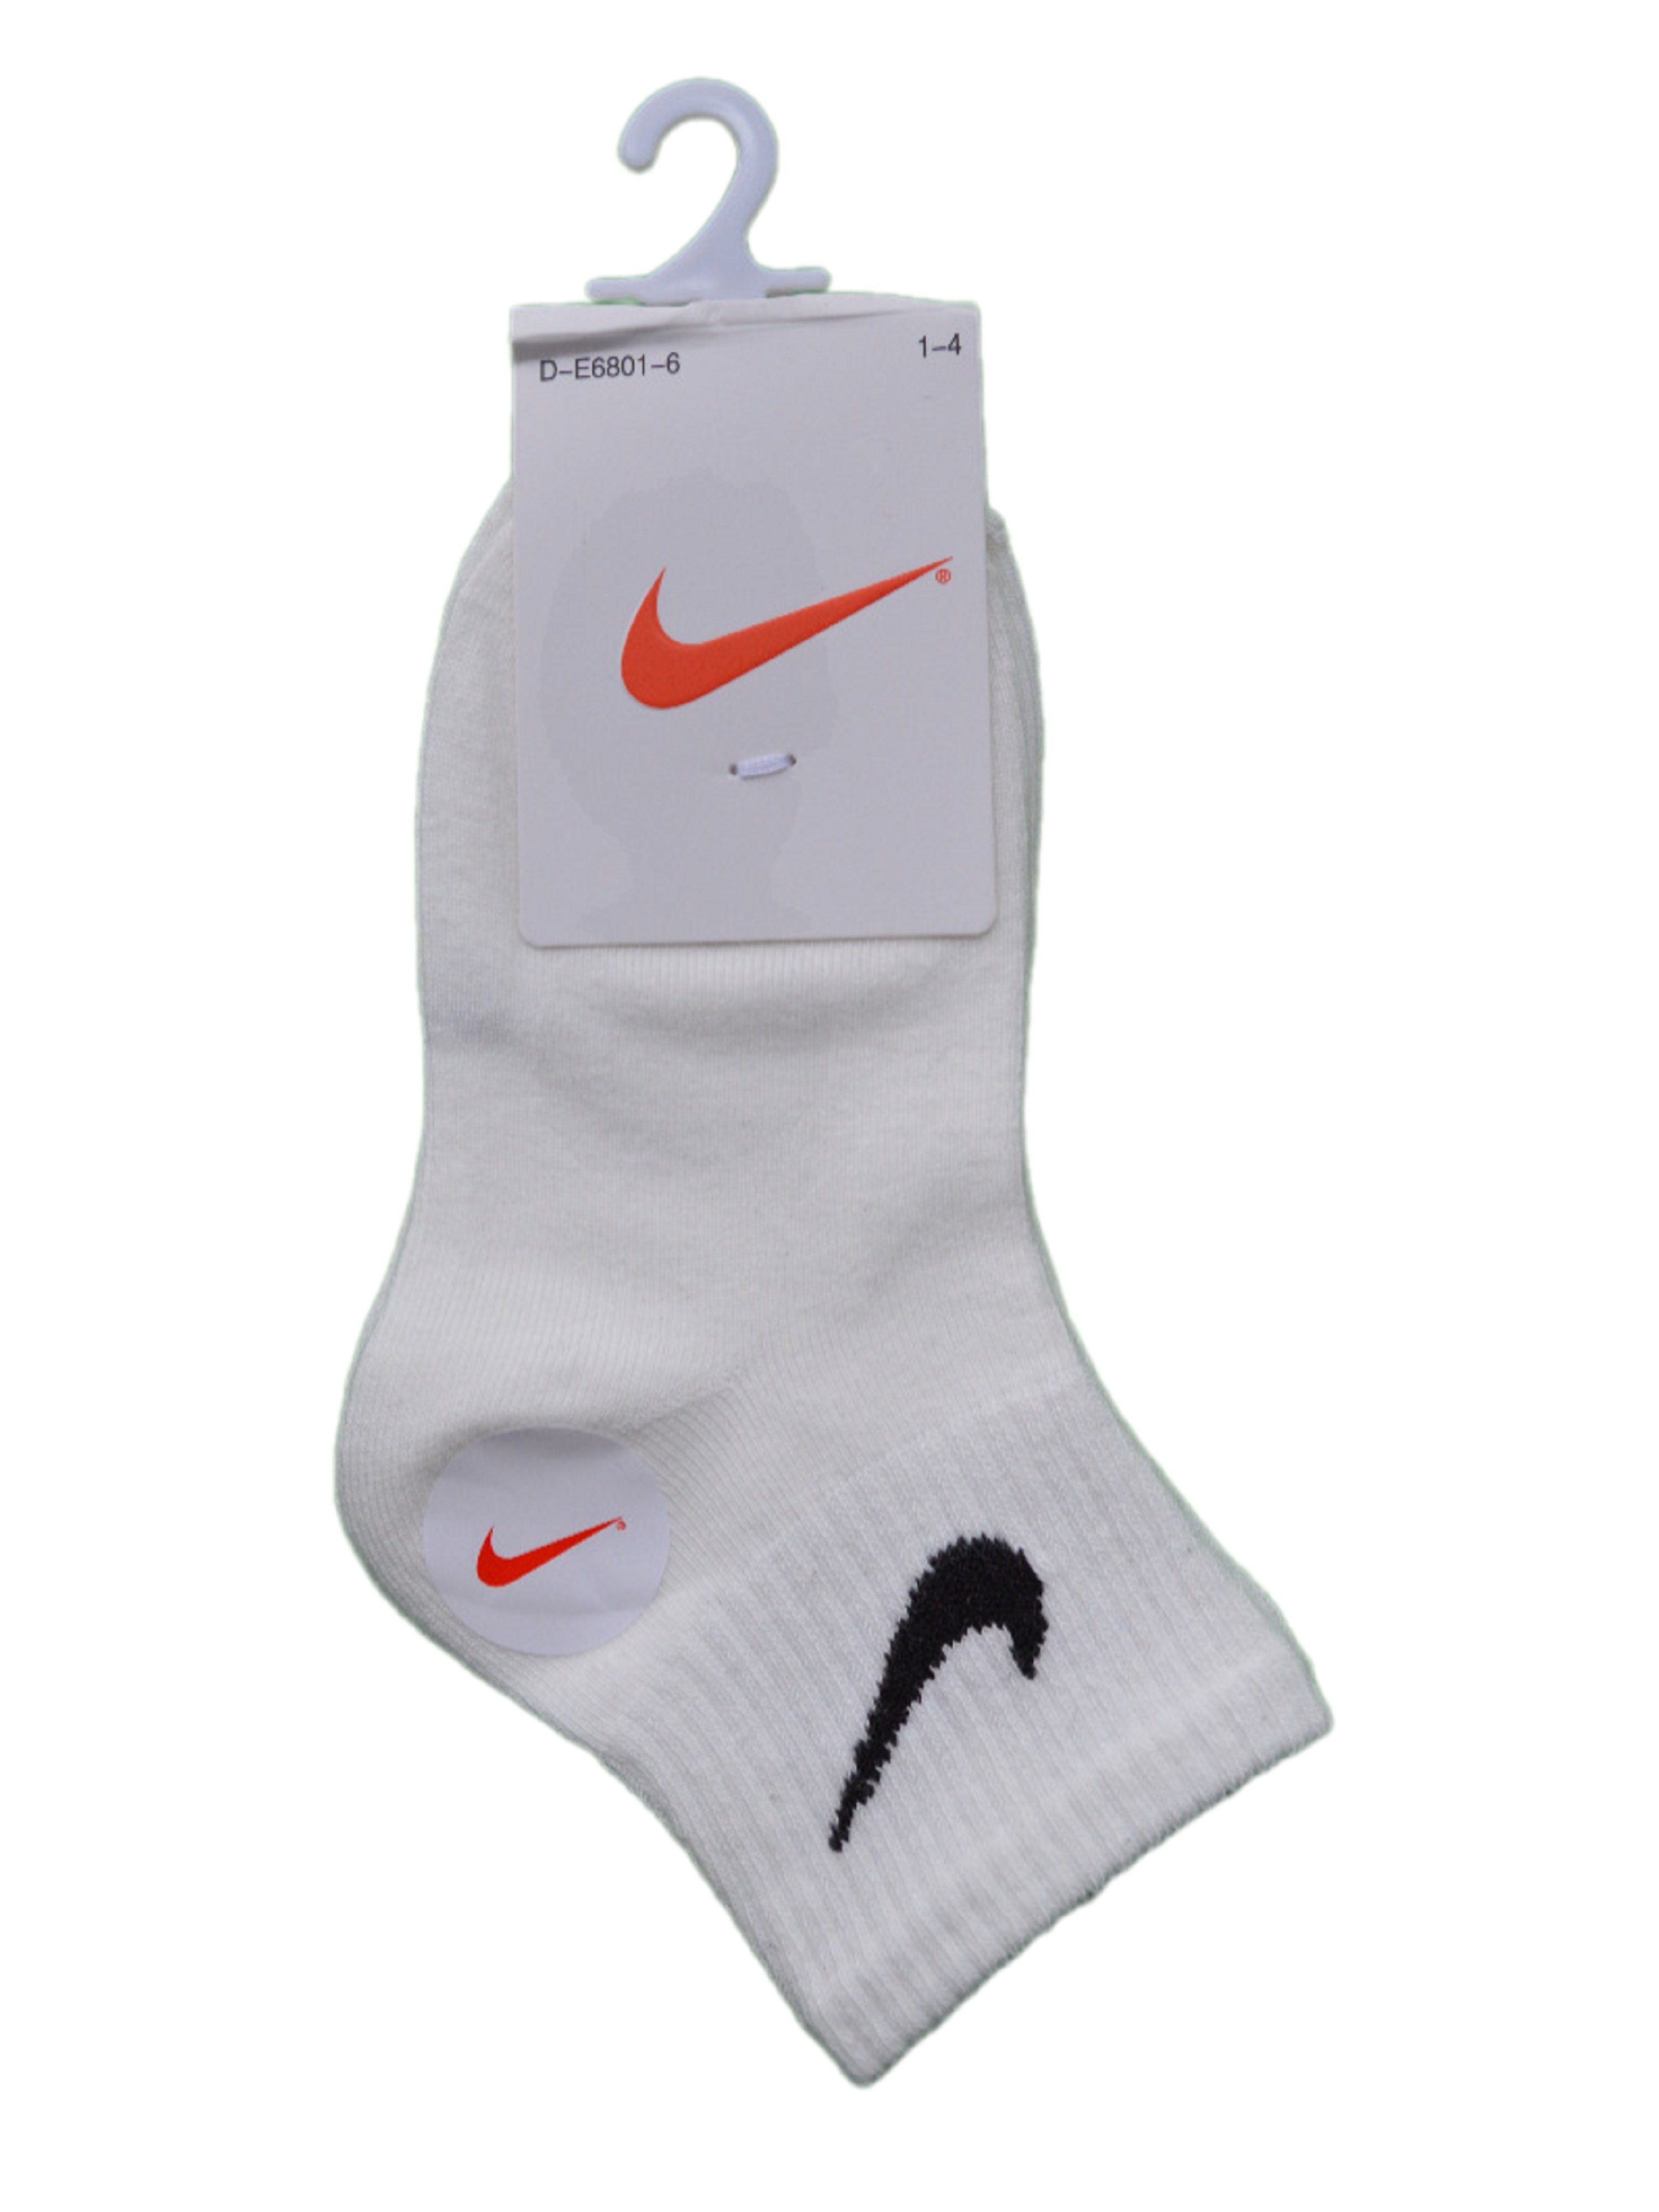 Носки детские Nike Ni-D-E6801-6, белый, 6 леггинсы детские nike da5163 010 152